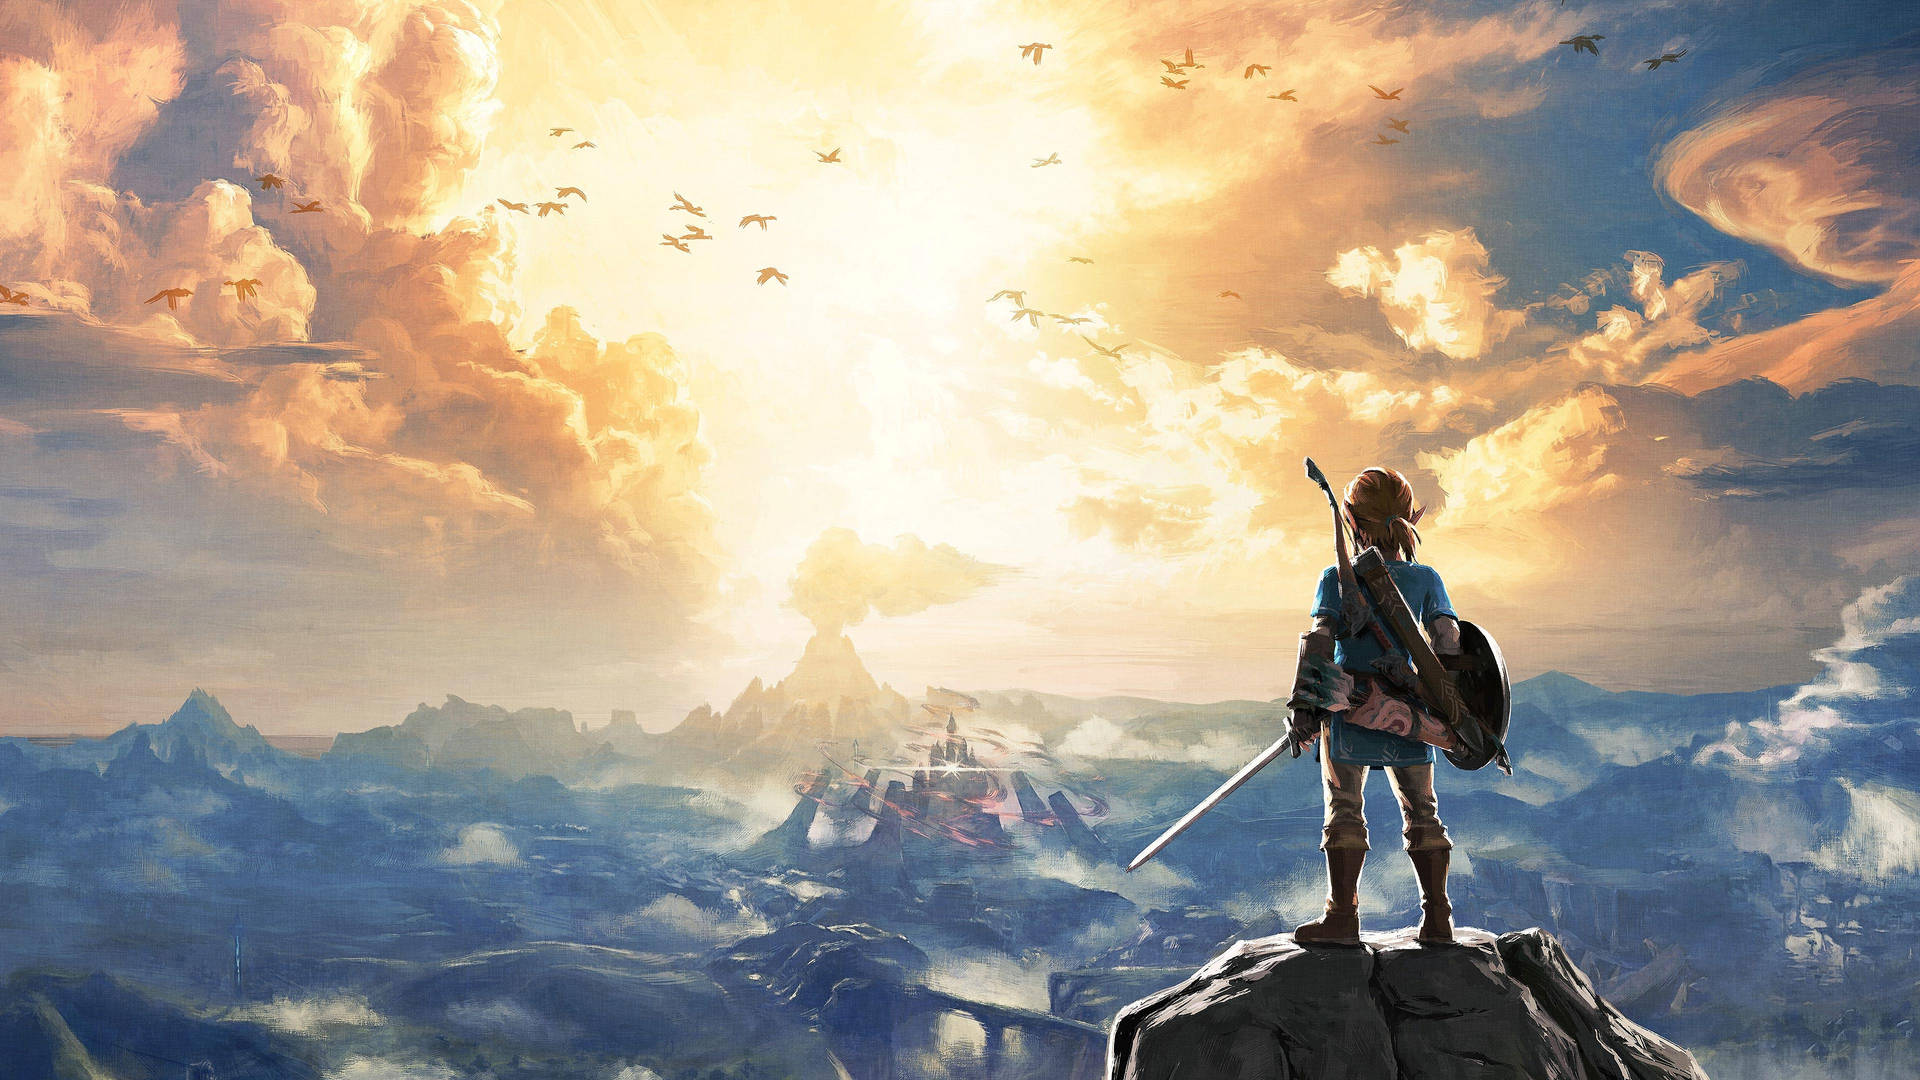 Zelda Background Wallpaper